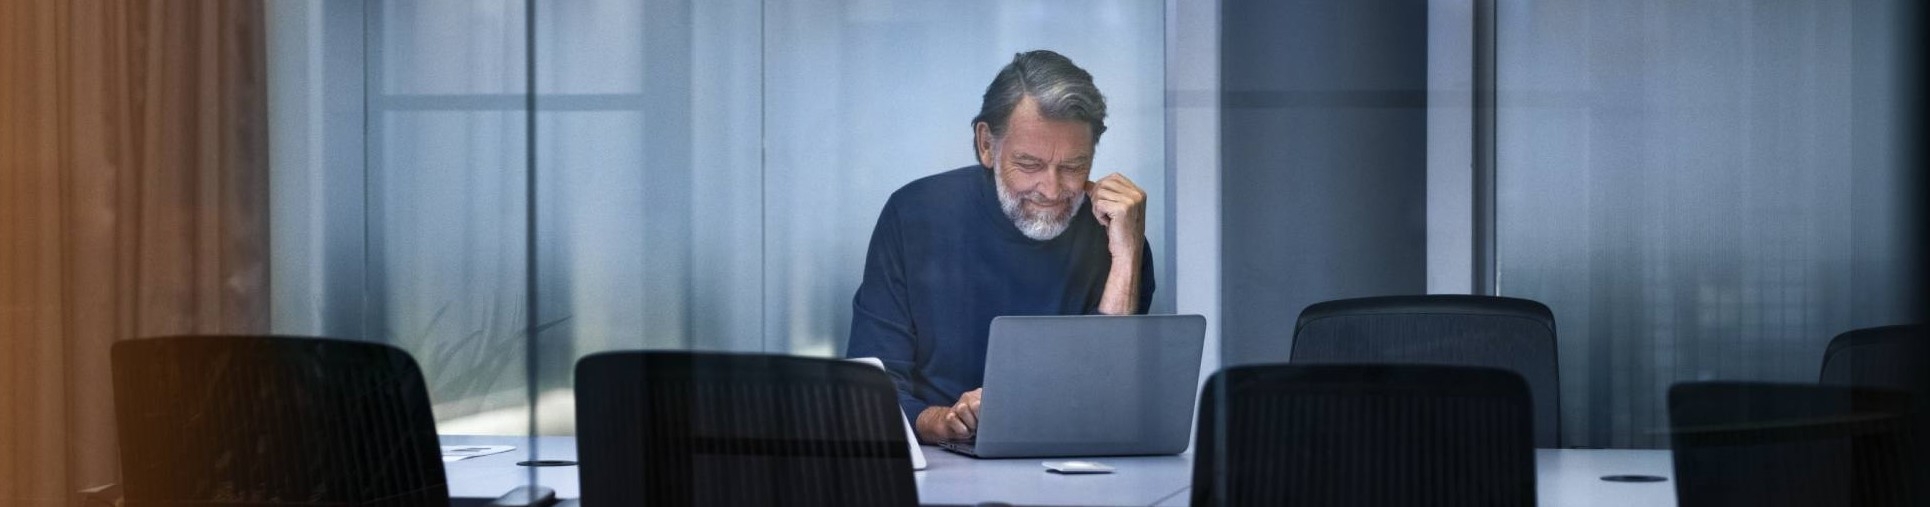 Äldre man med laptop i konferensrum.